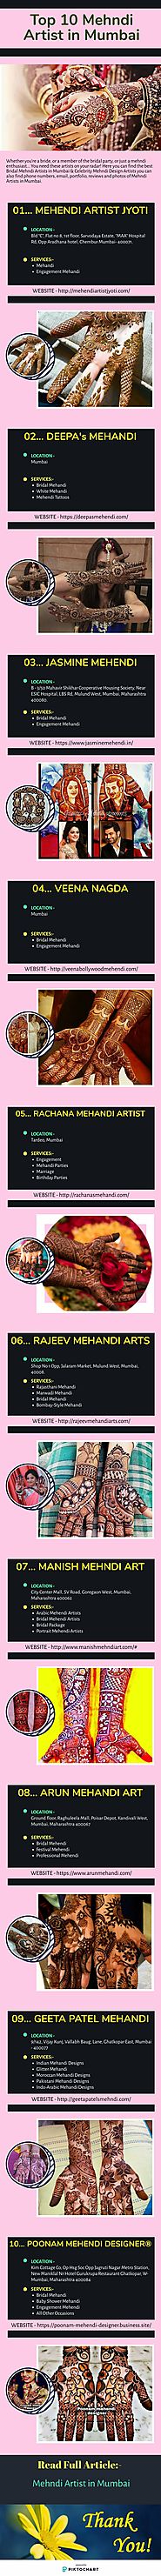 Top 10 Mehandi Artist in Mumbai | Infographic